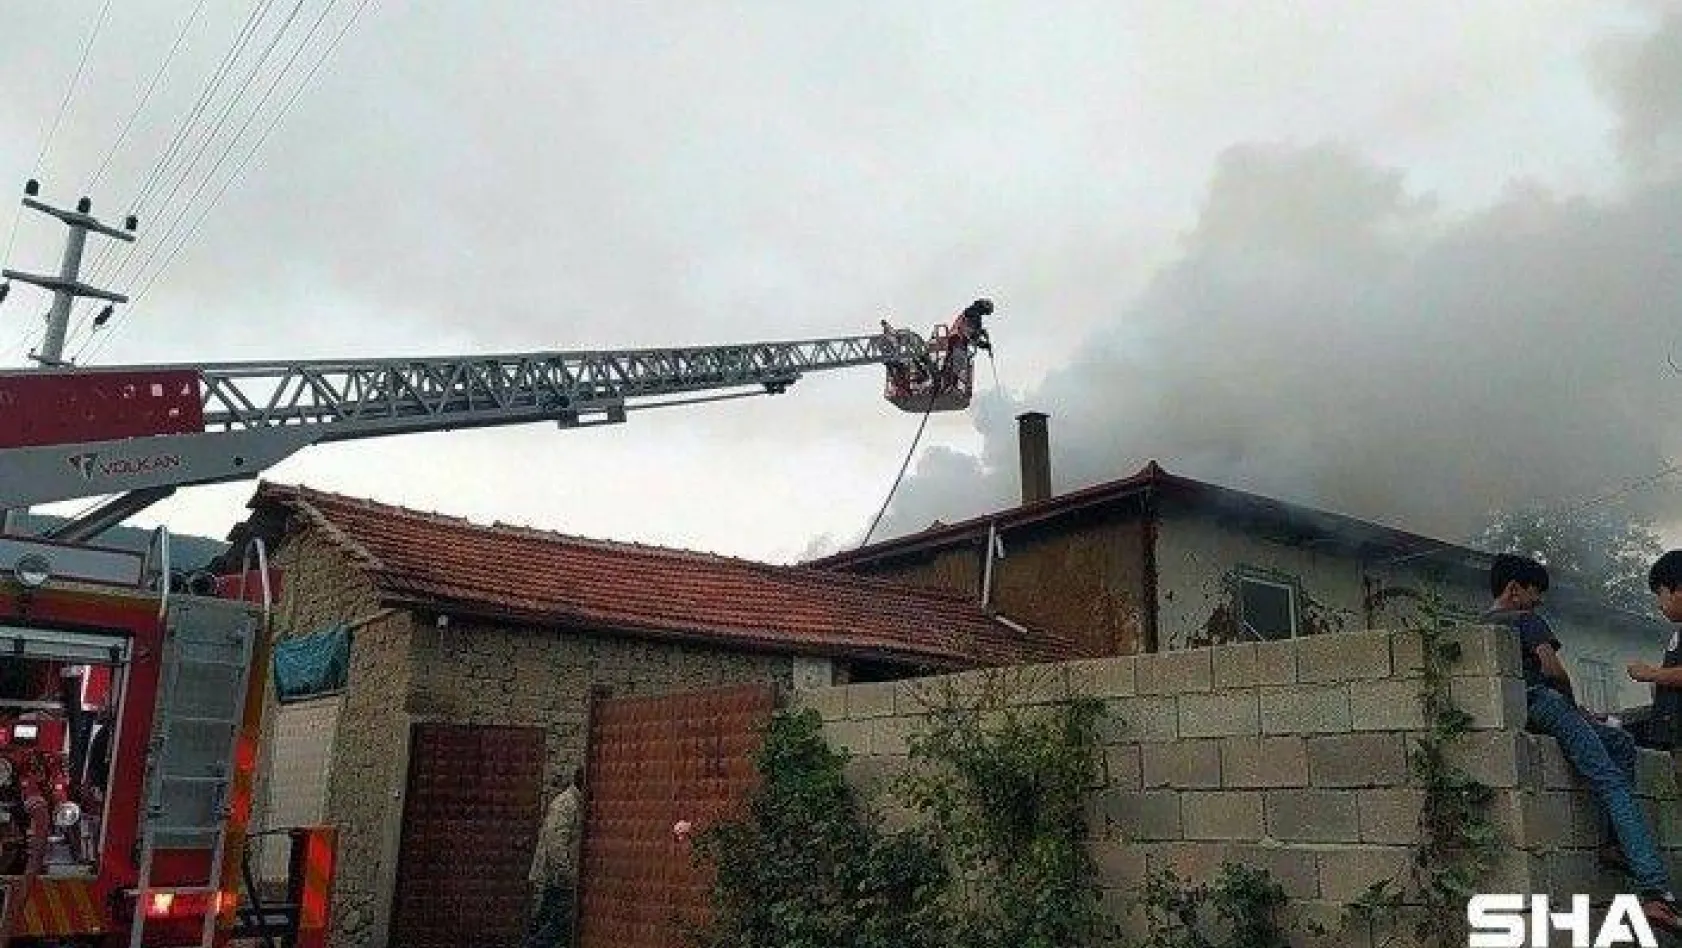 İki katlı evde çıkan yangına müdahale eden itfaiye eri yaralandı